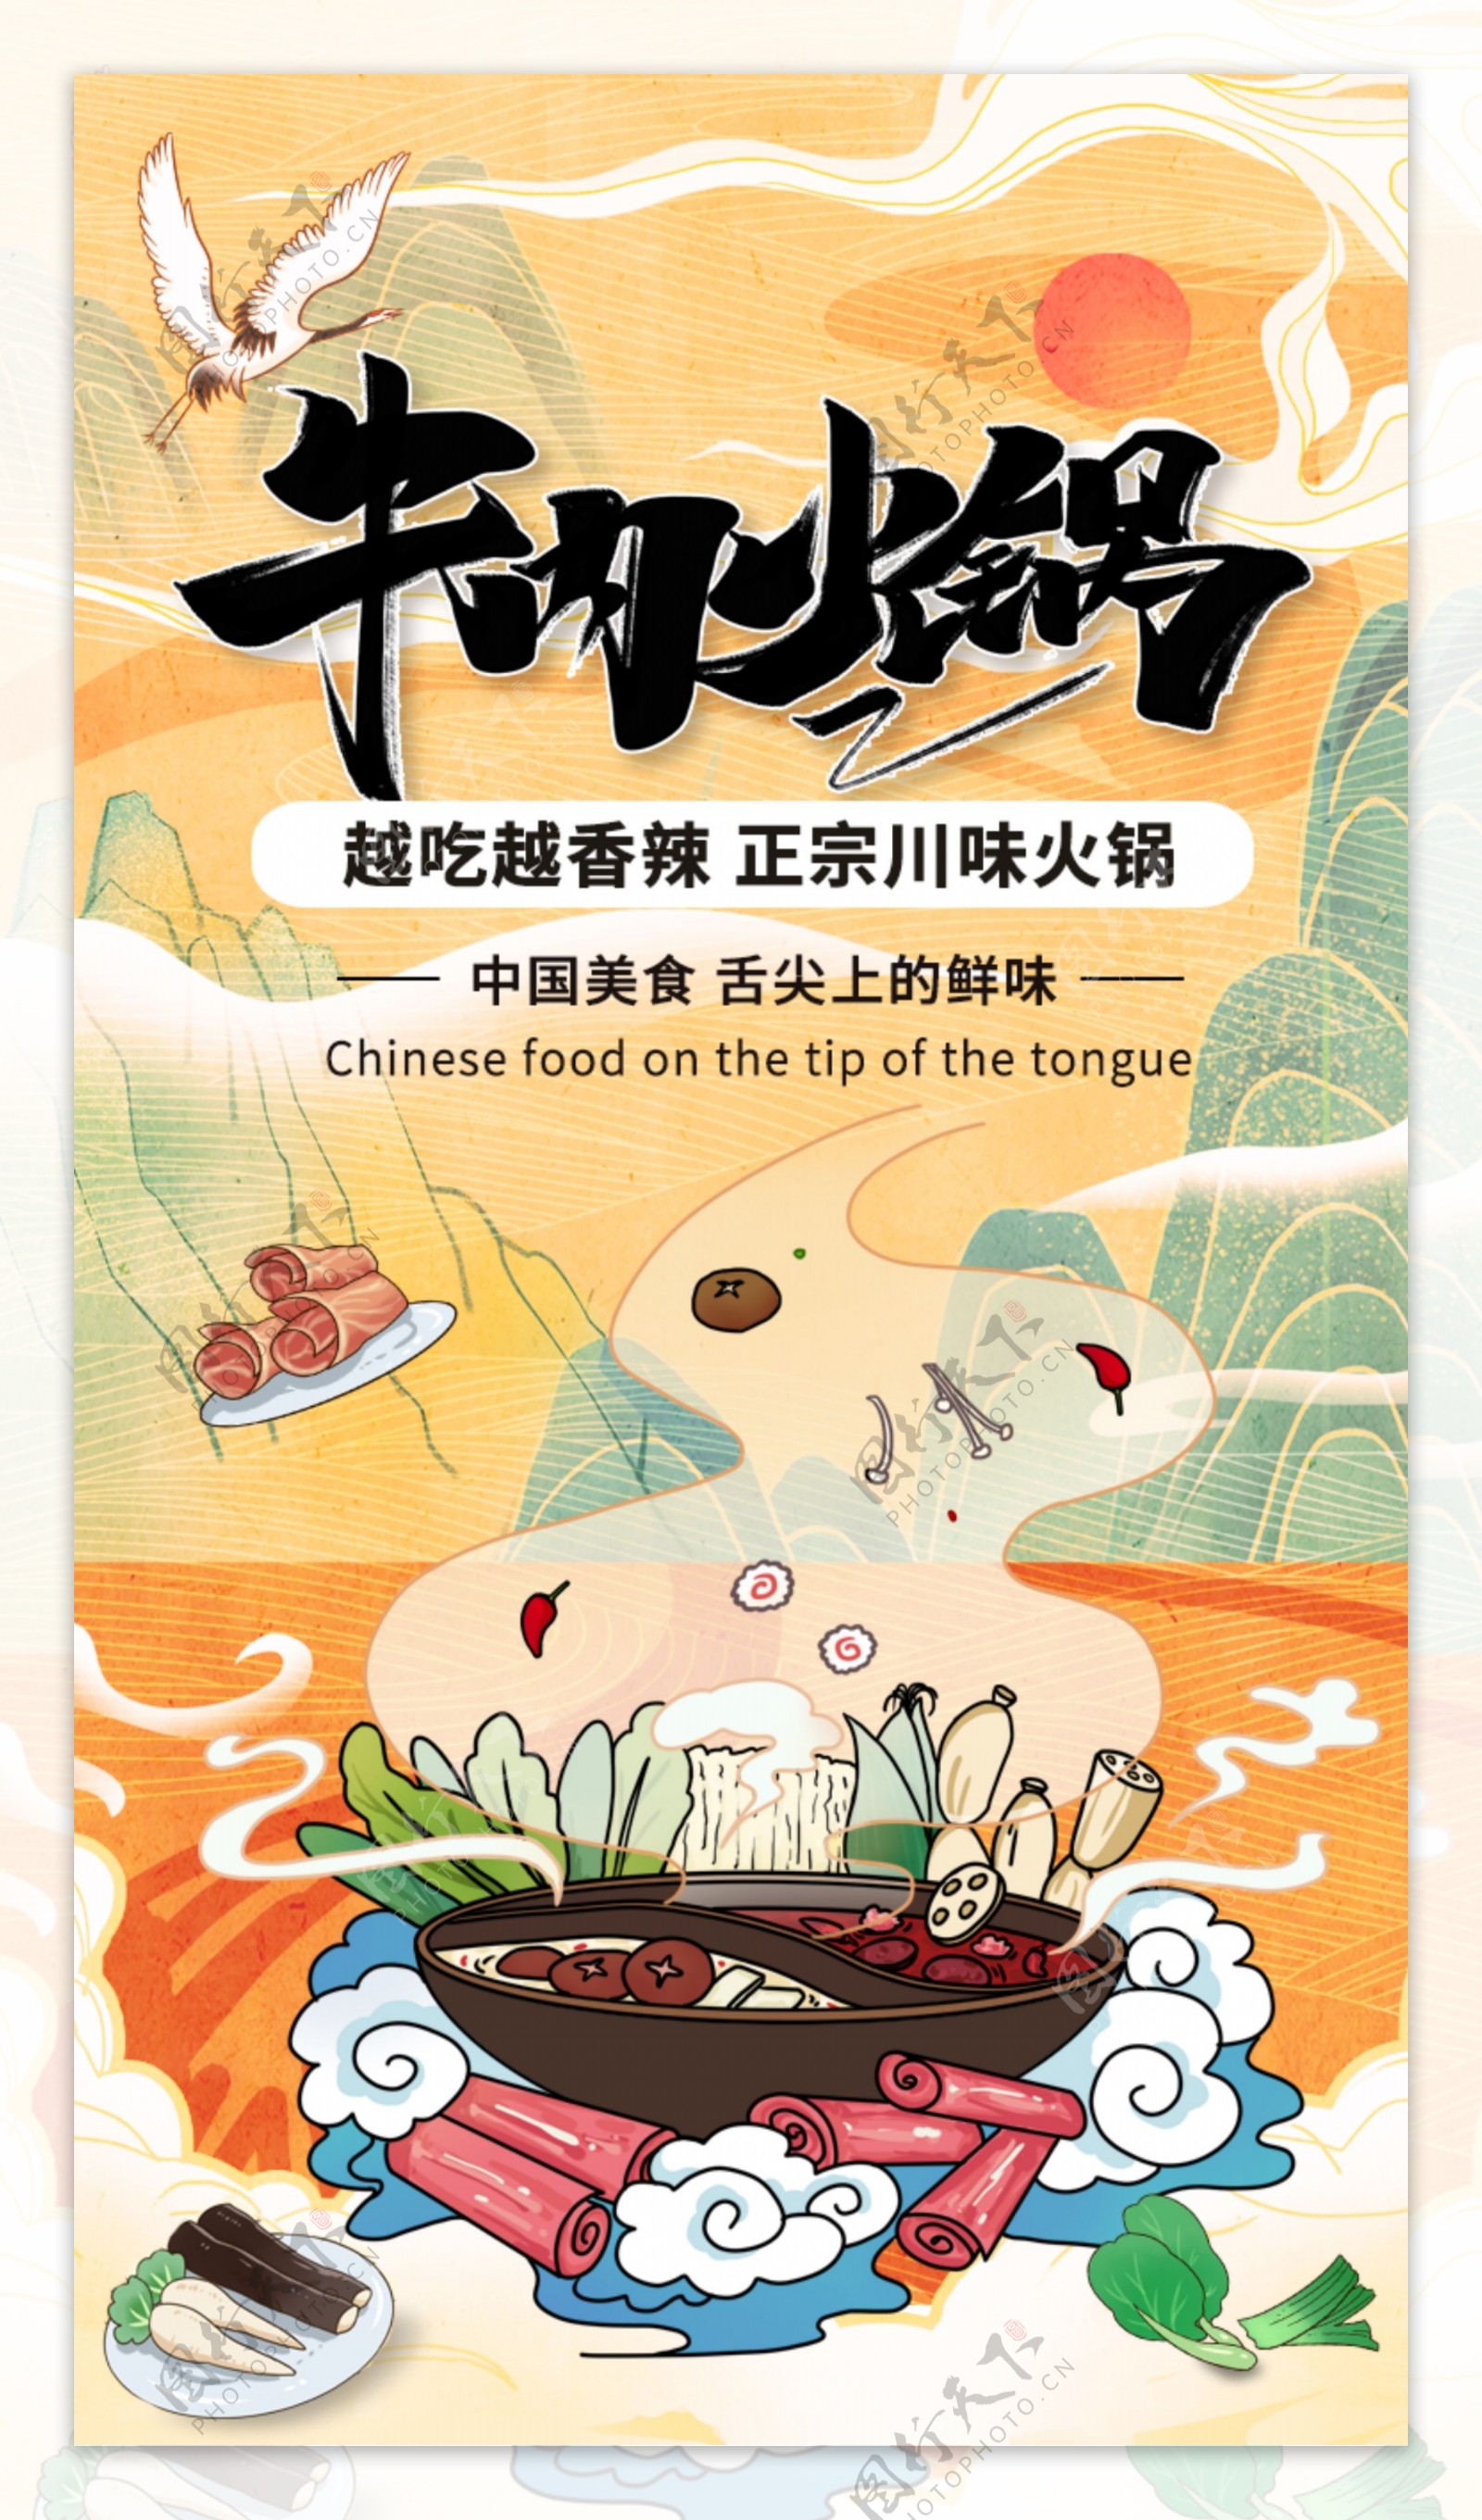 中国风国潮牛肉火锅宣传h5海报图片